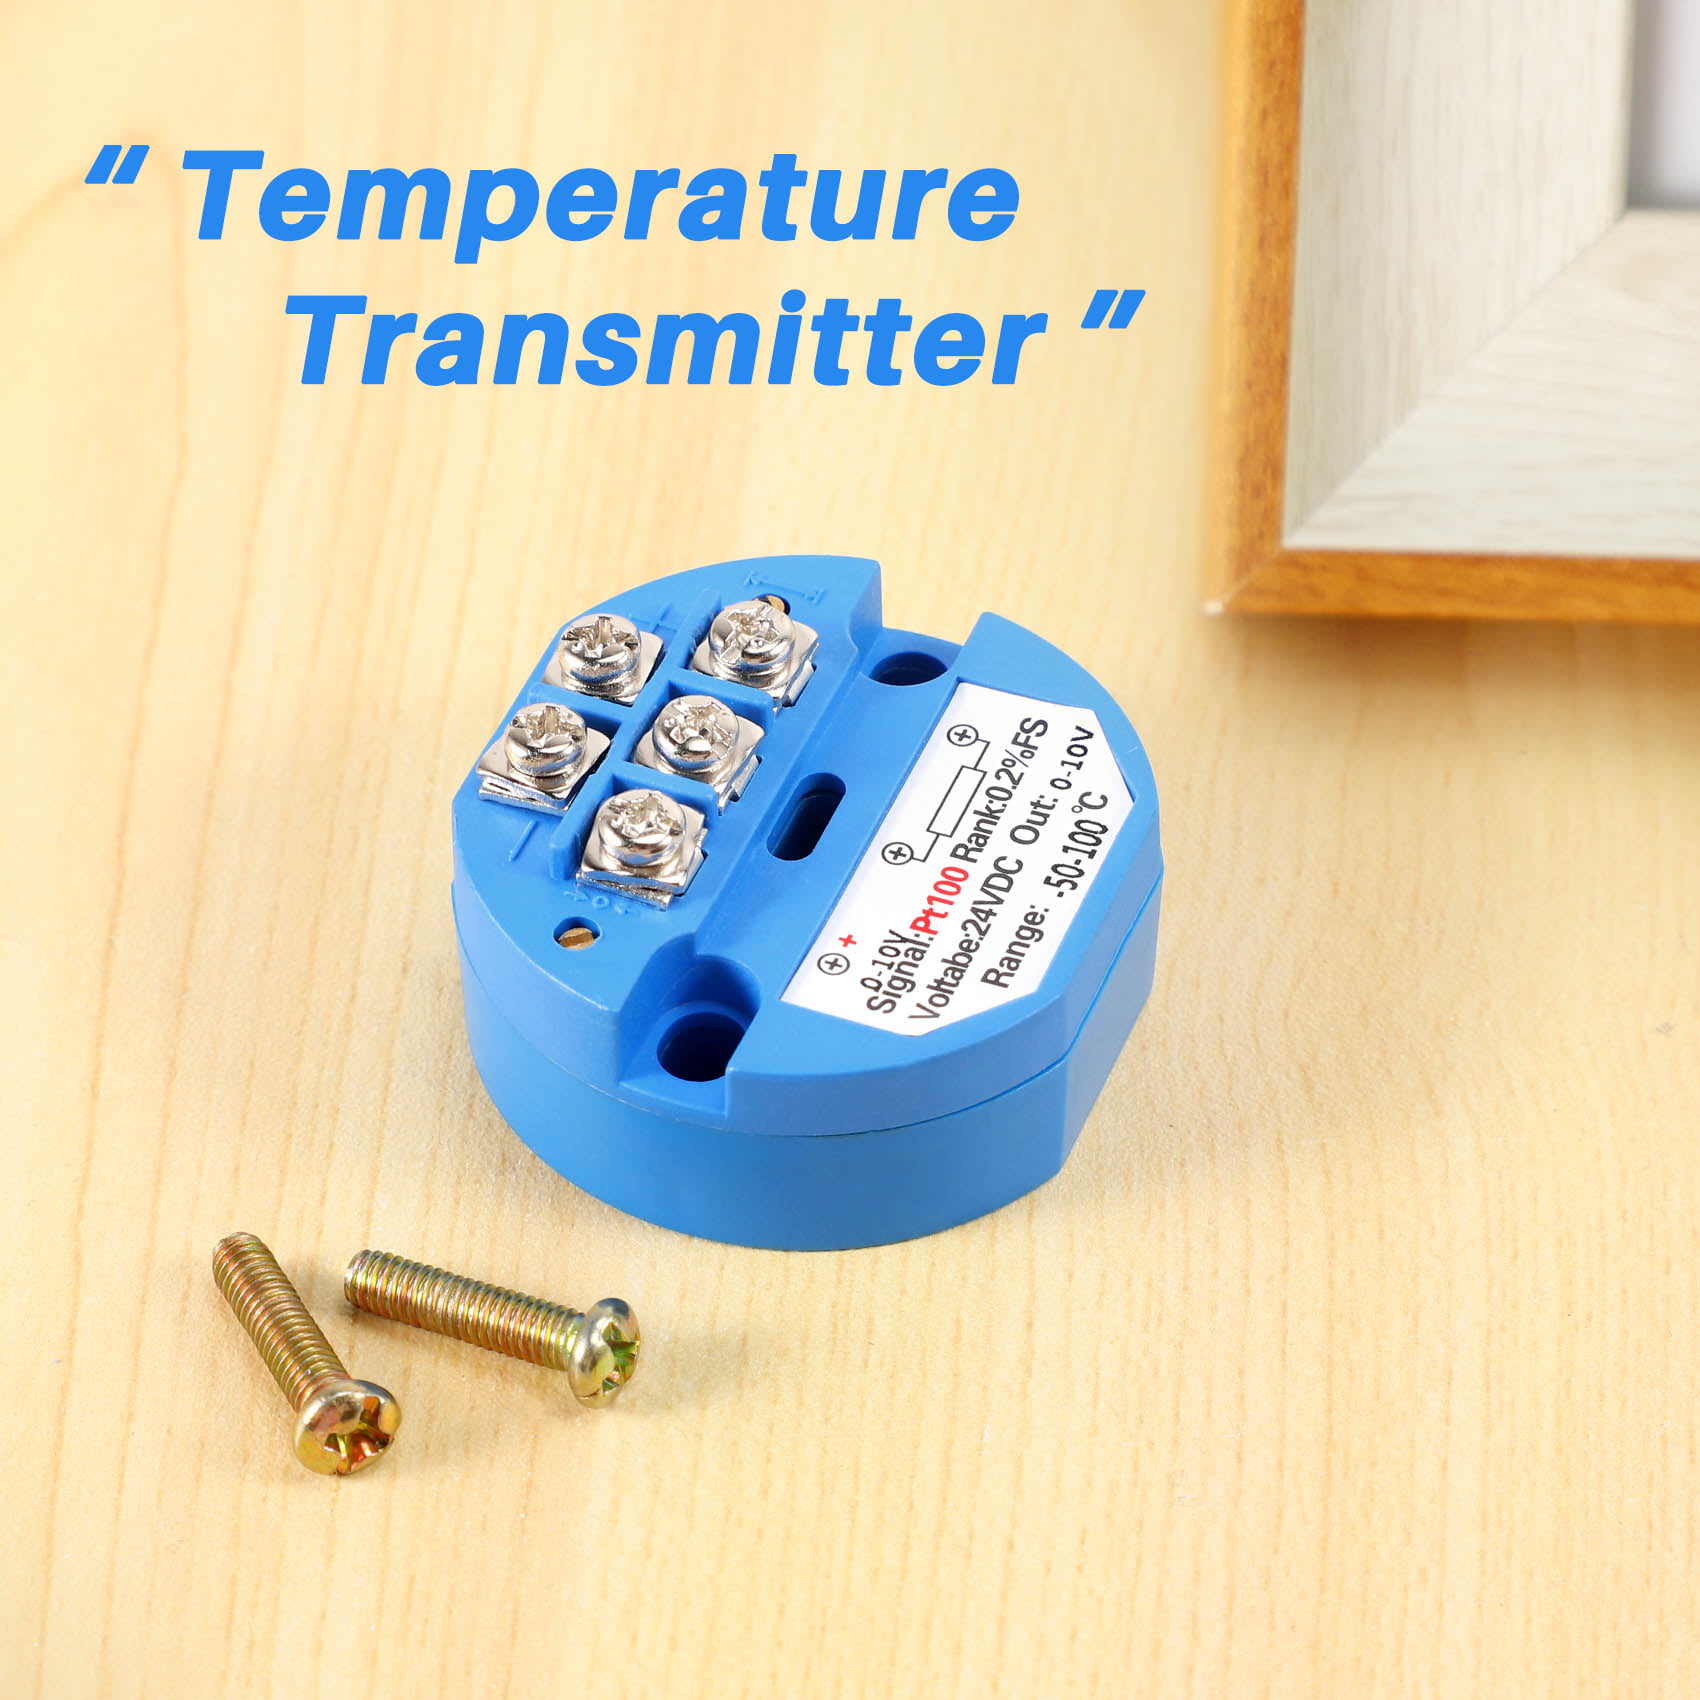 PT100 Temperature Sensor Transmitter 24V DC 0-10V 0℃ to 200℃ Blue 